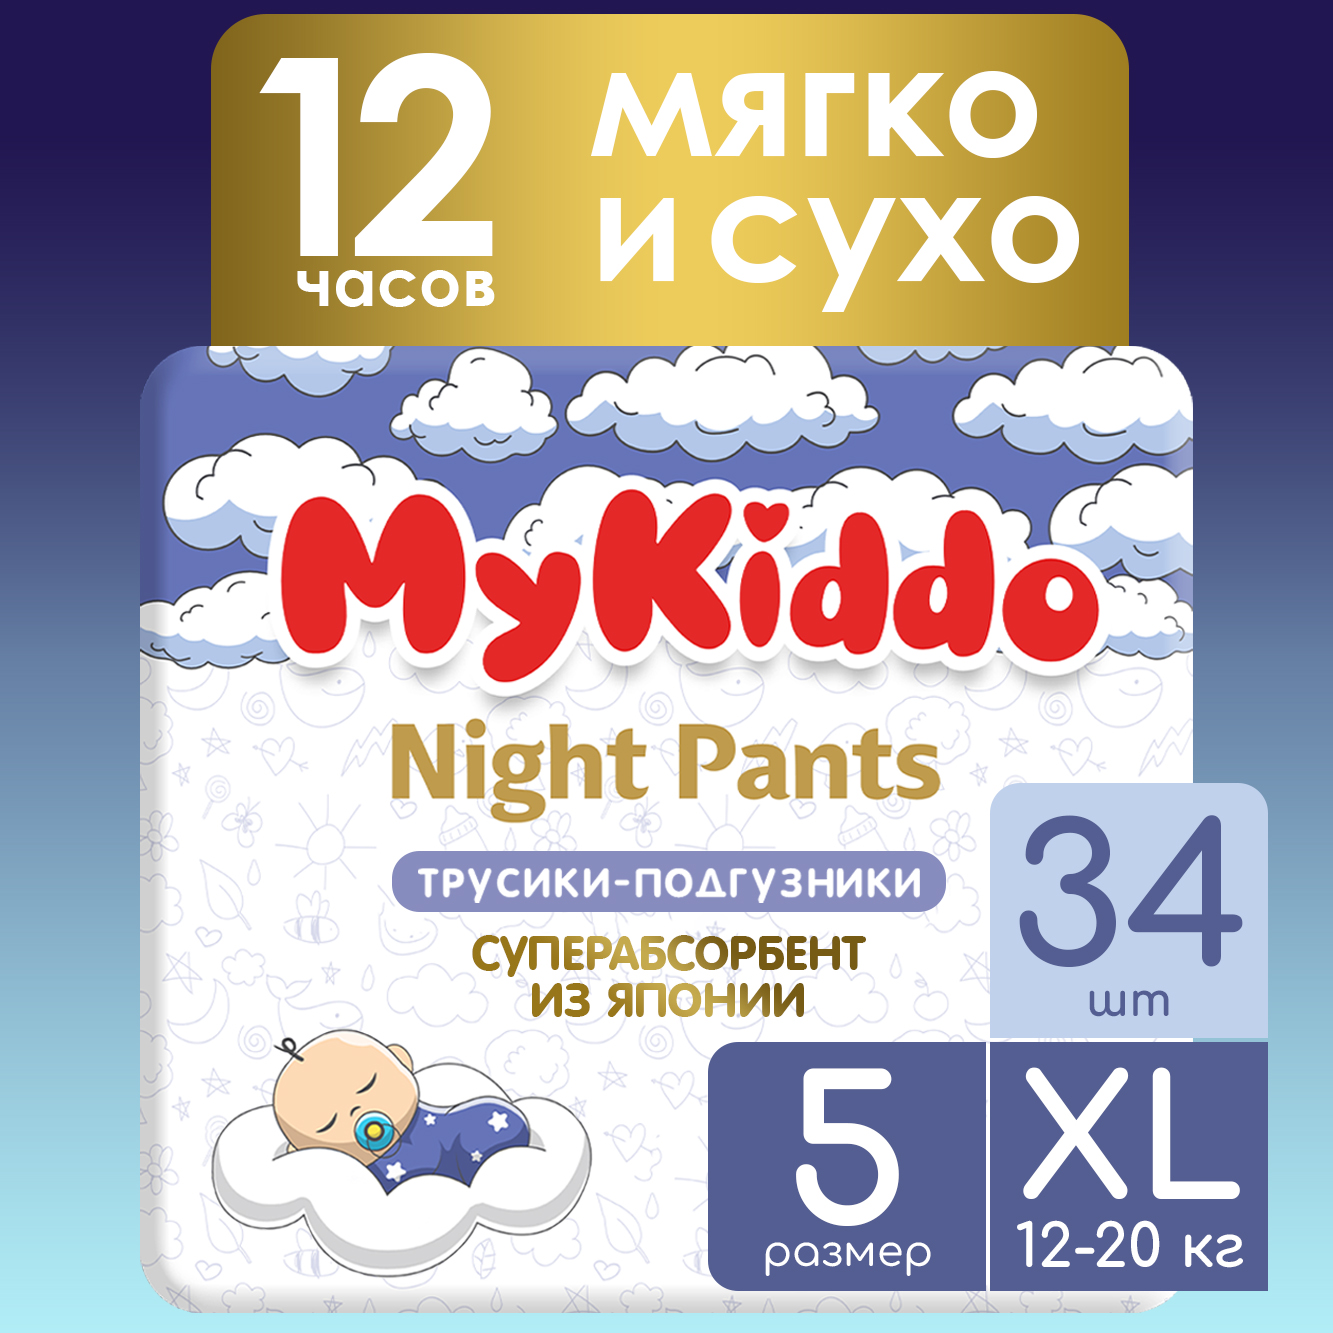 Подгузники-трусики для детей MyKiddo Night XL 34 шт. 2 уп. x 17 шт.